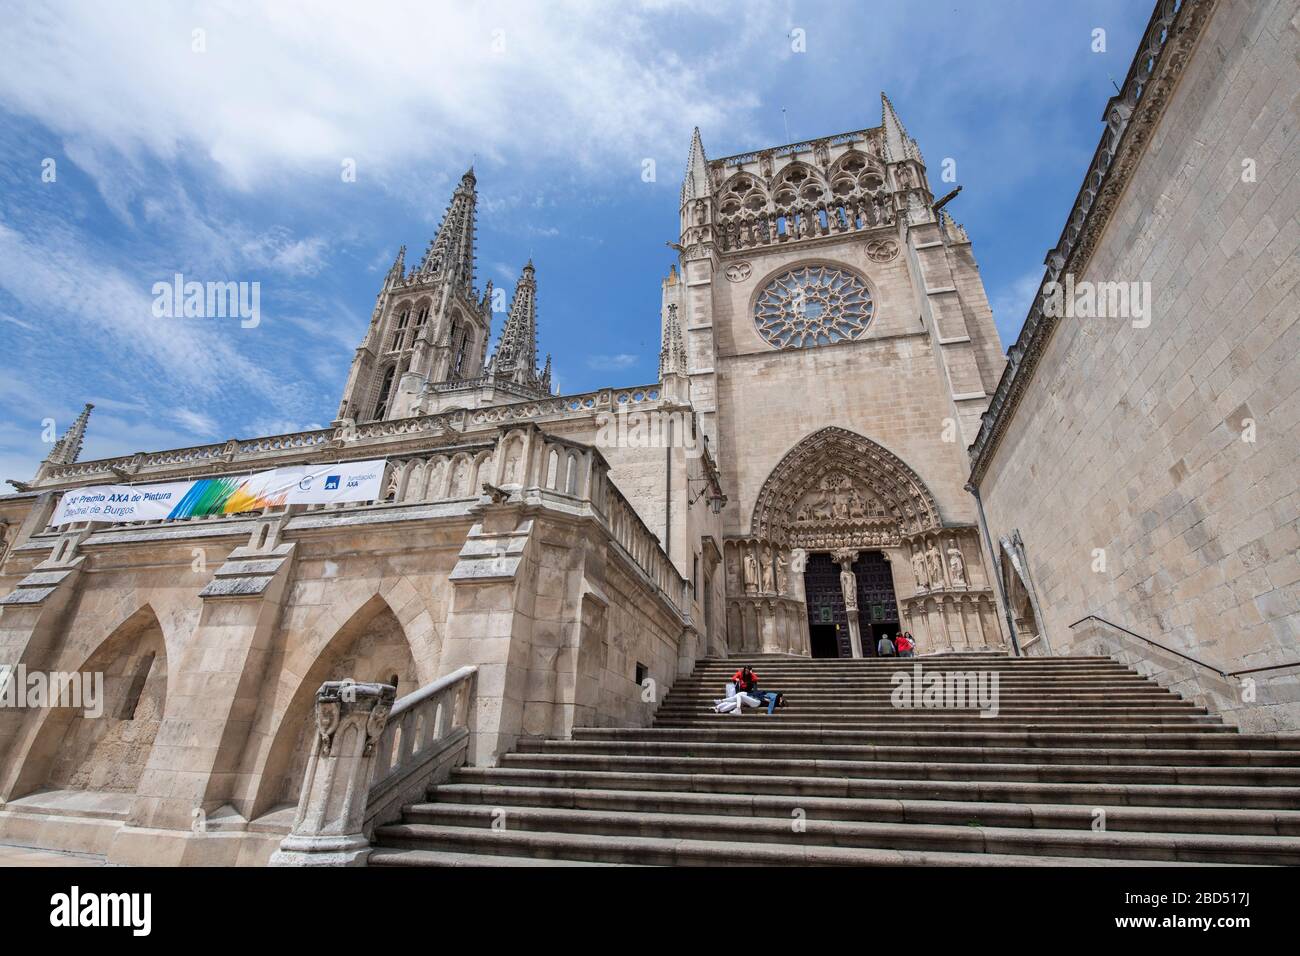 Escaleras a la Puerta Sacramental, Fachada del Sarmental, Catedral de Santa María de Burgos, Patrimonio de la Humanidad de la UNESCO, Burgos, Castilla y León, España Foto de stock